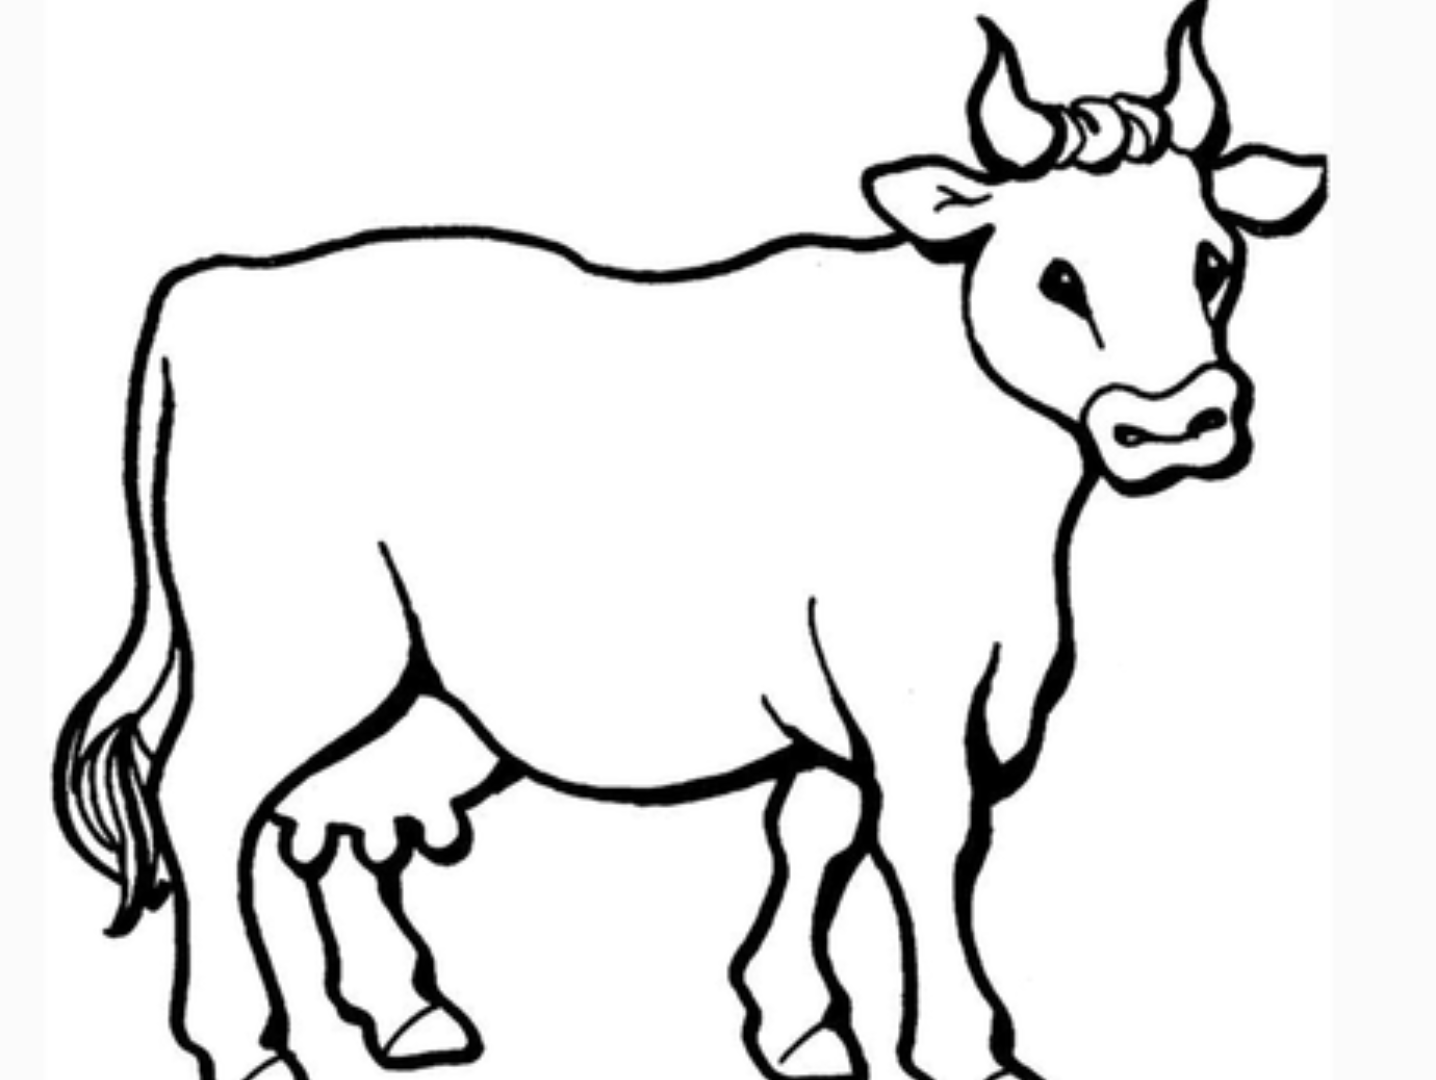 2021年牛的画法图片